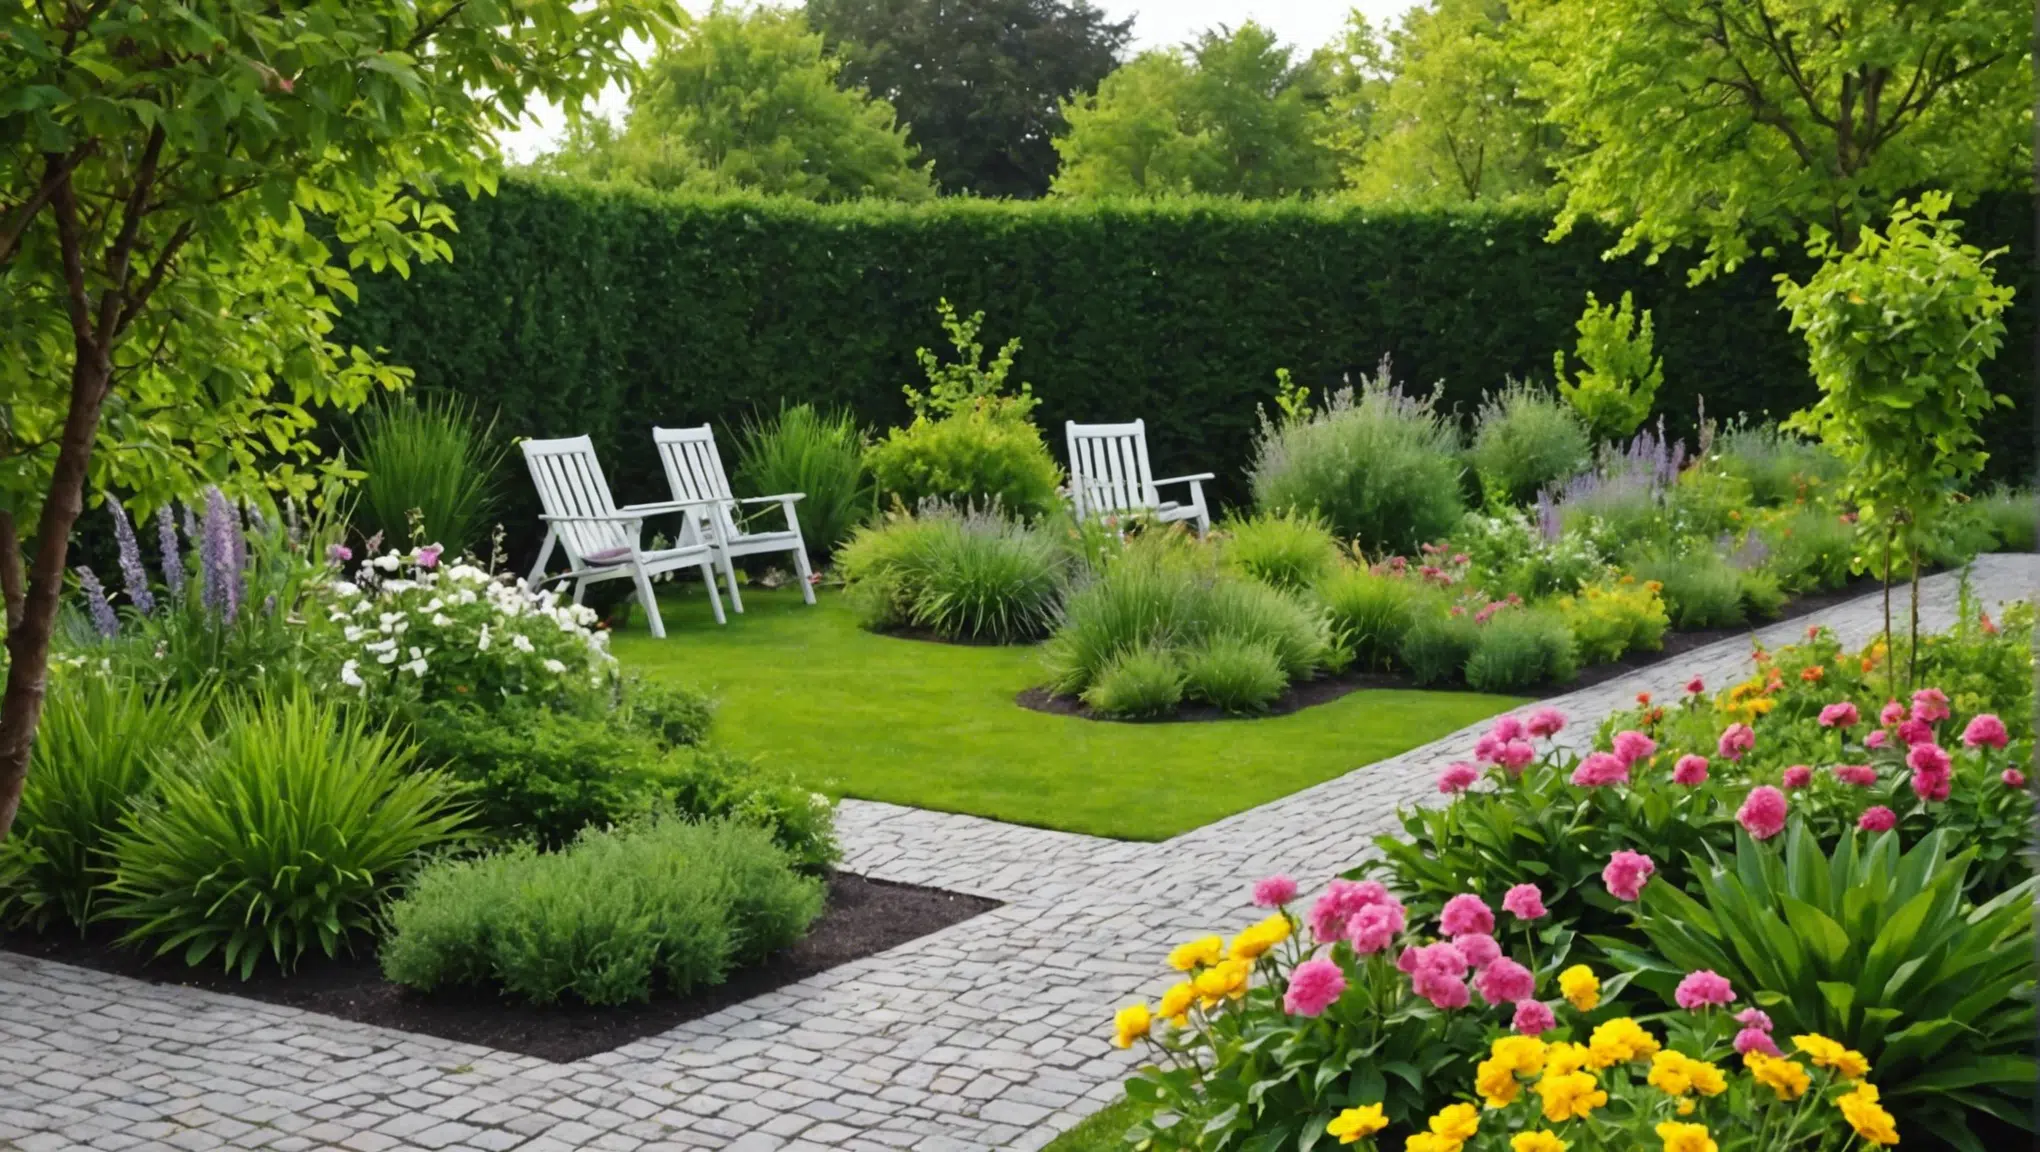 découvrez comment transformer votre jardin en un paradis aromatique avec une astuce incroyable grâce à nos conseils simples et pratiques.